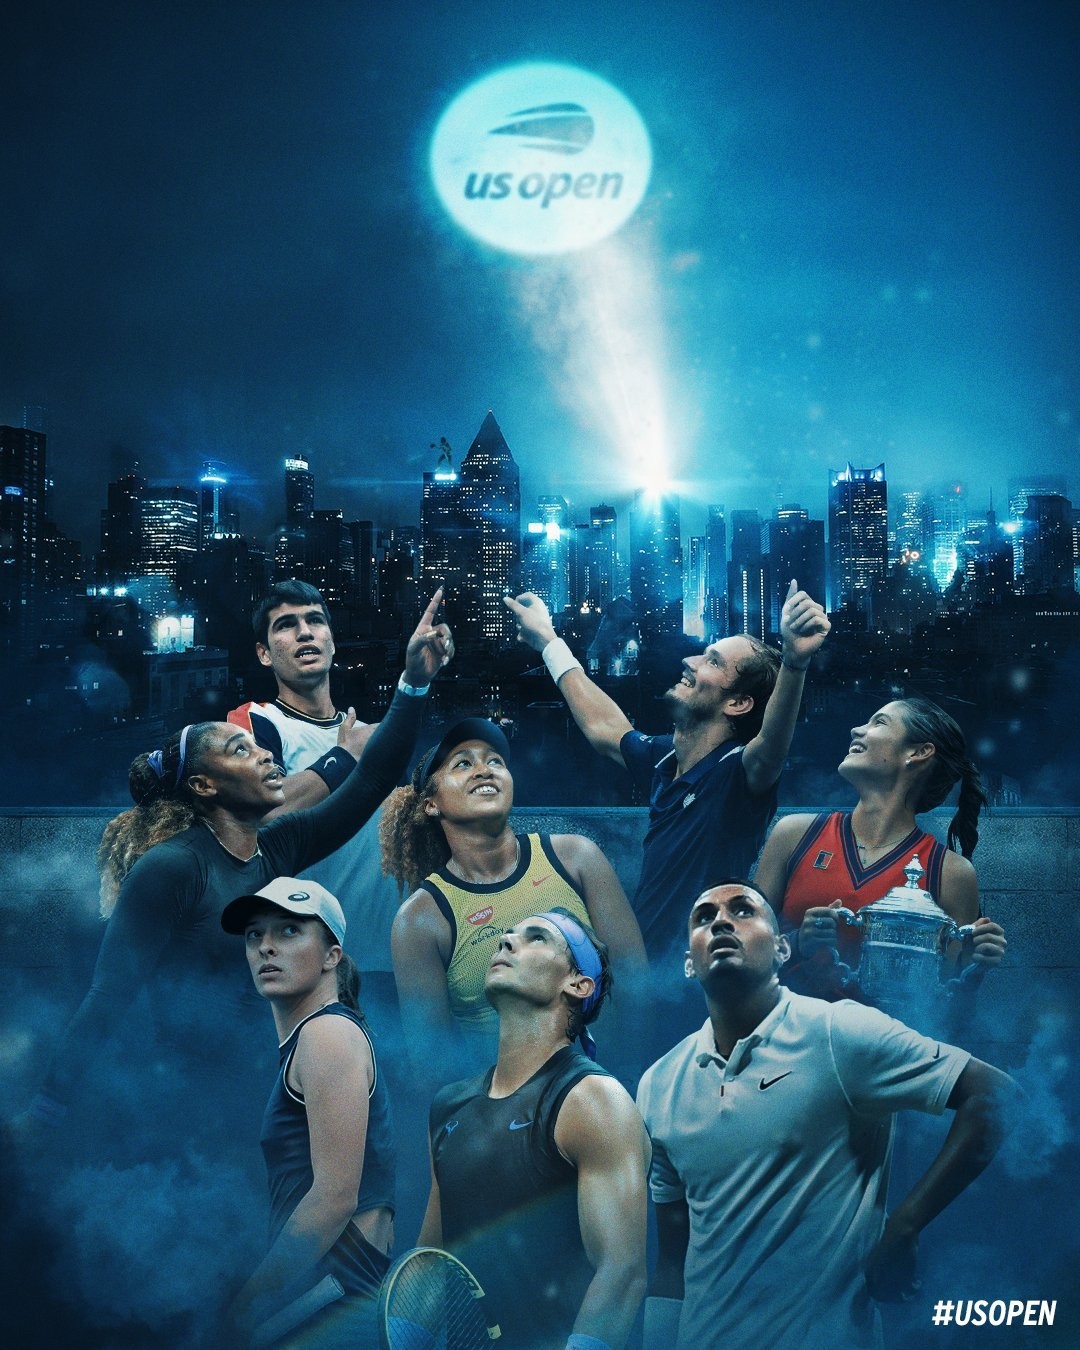 El US Open no incluye a Djokovic en su cartel promocional...¿premonición?